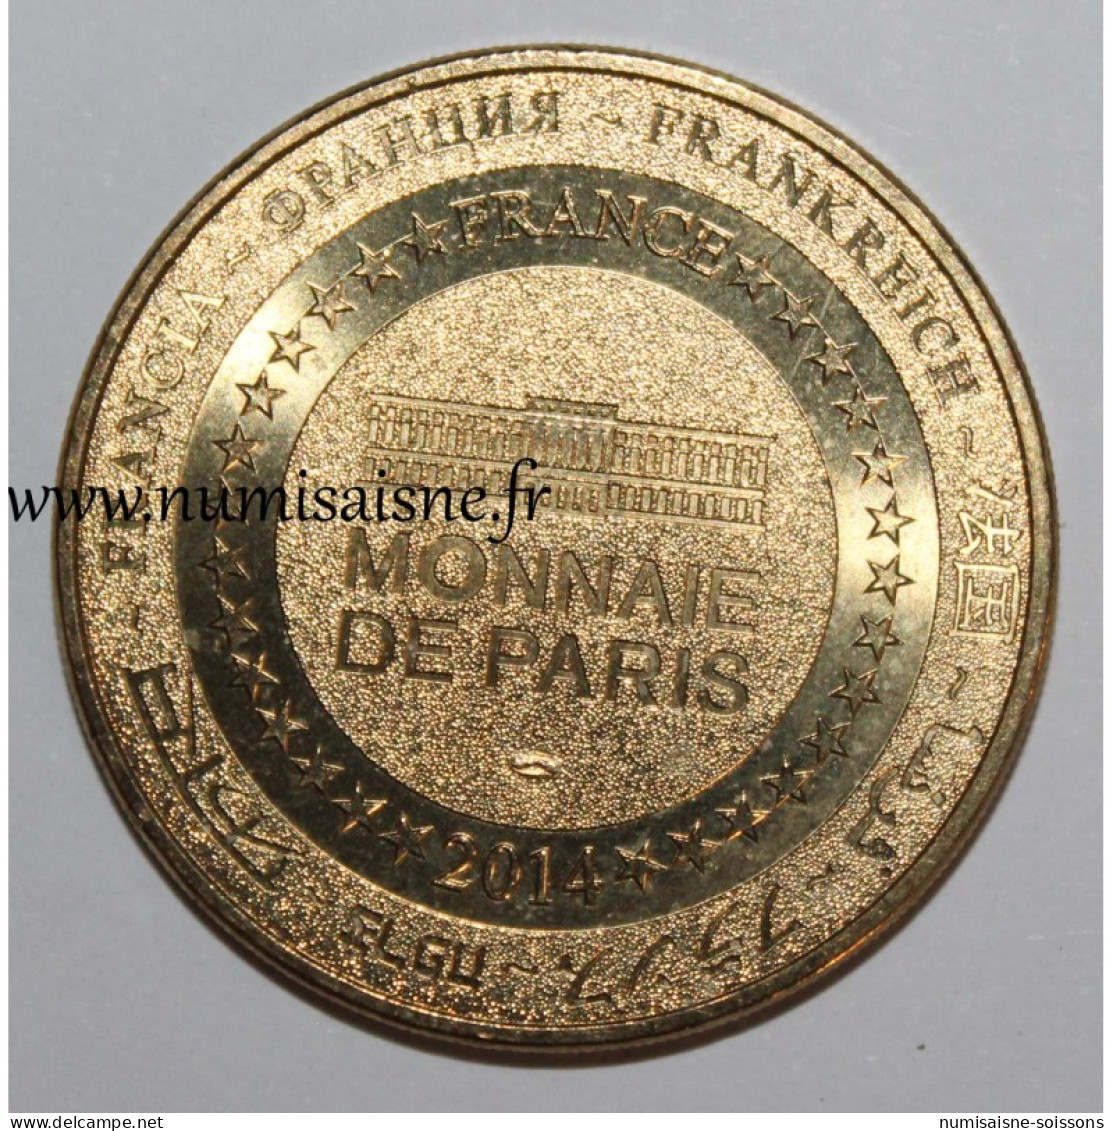 75 - PARIS - MUSÉE DU LOUVRE - LA JOCONDE - Monnaie De Paris - 2014 - 2014